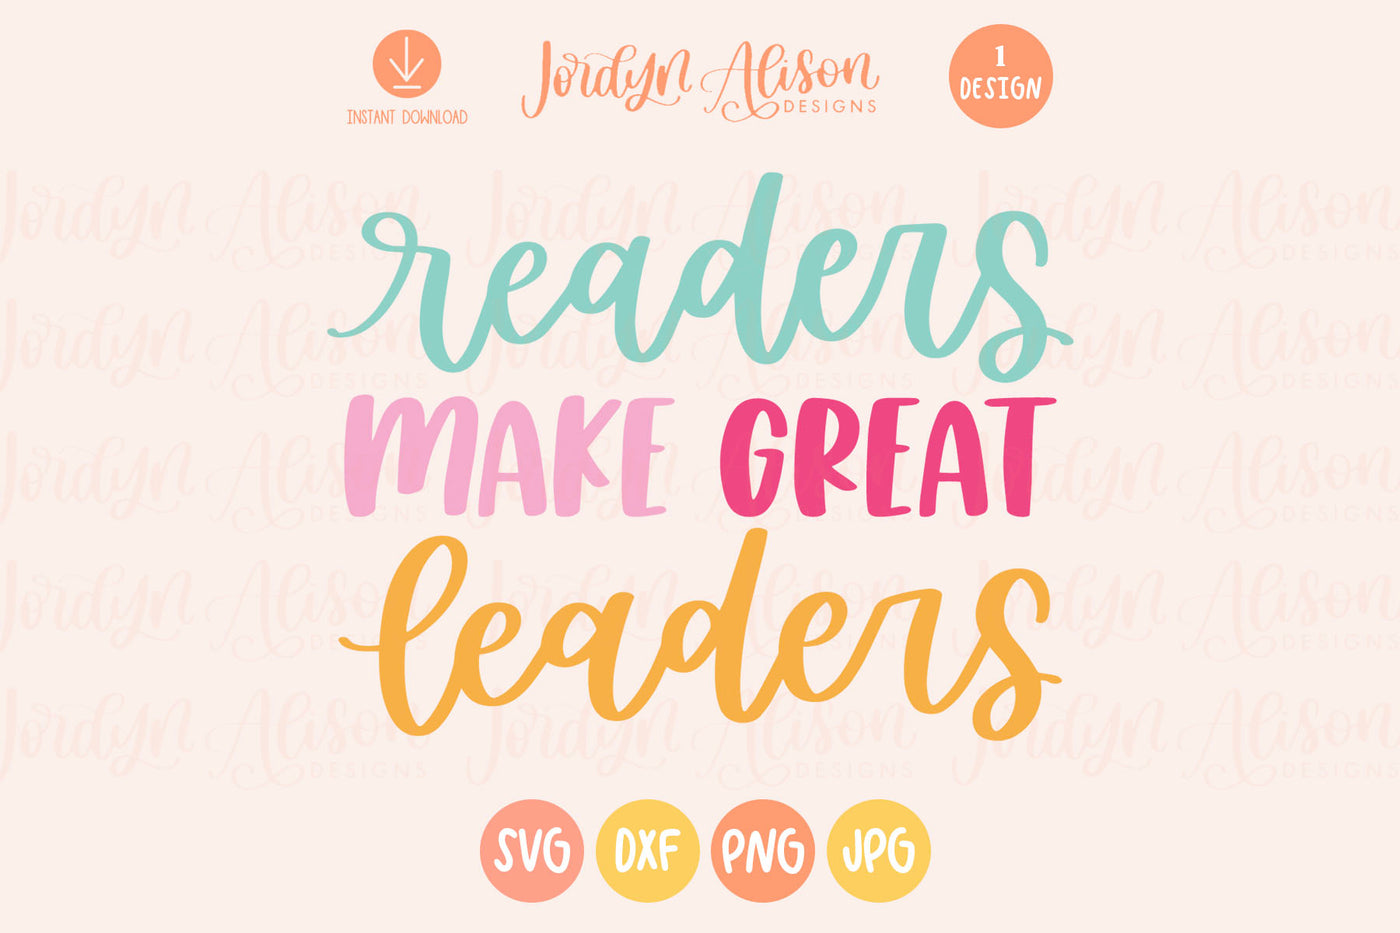 Readers Make Great Leaders SVG